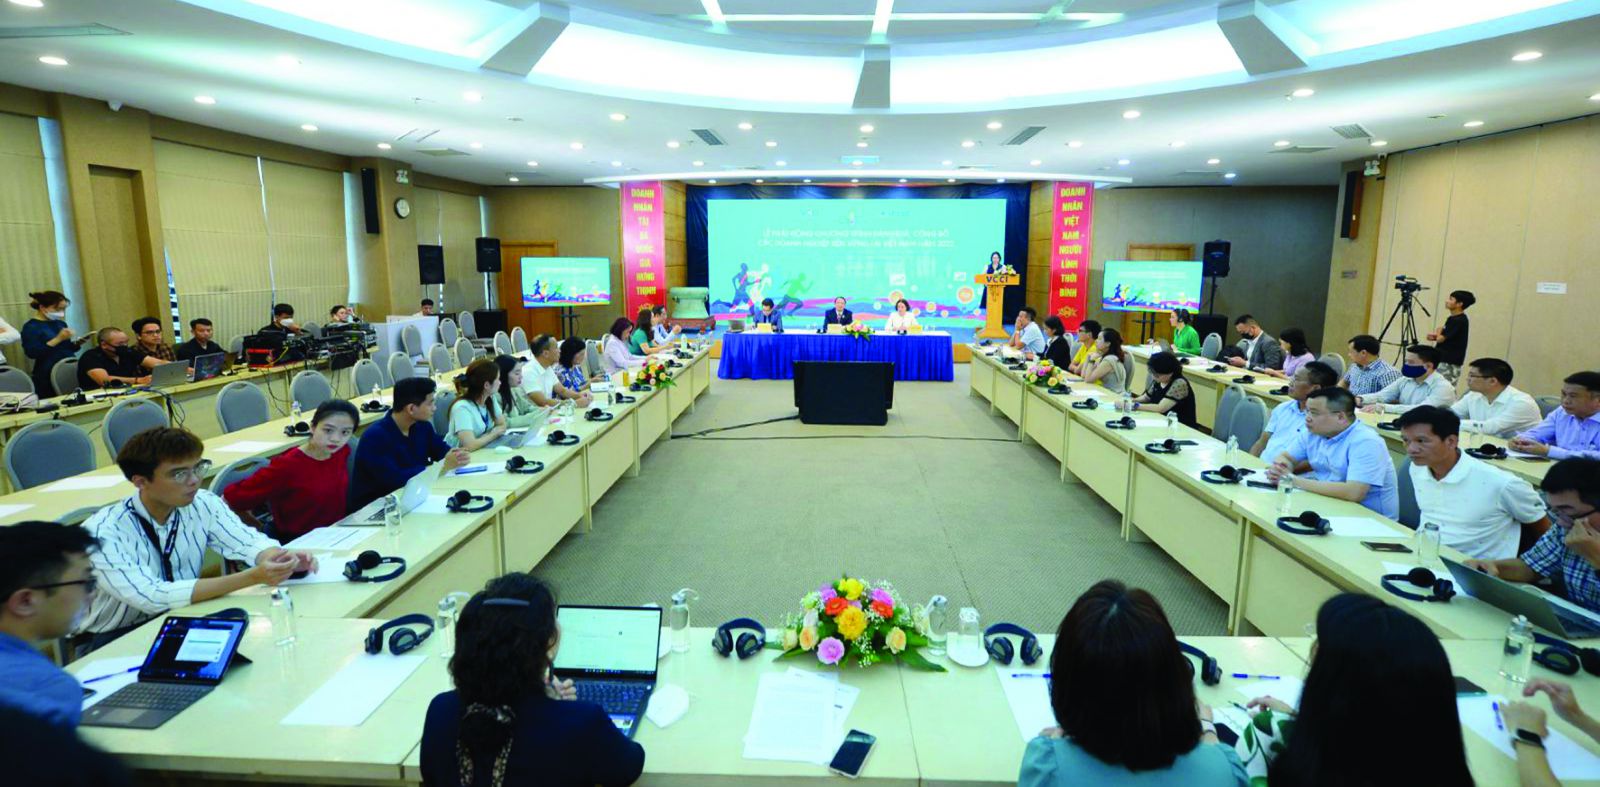  Lễ phát động Chương trình Đánh giá, Công bố Doanh nghiệp bền vững tại Việt Nam năm 2022 (CSI 2022)